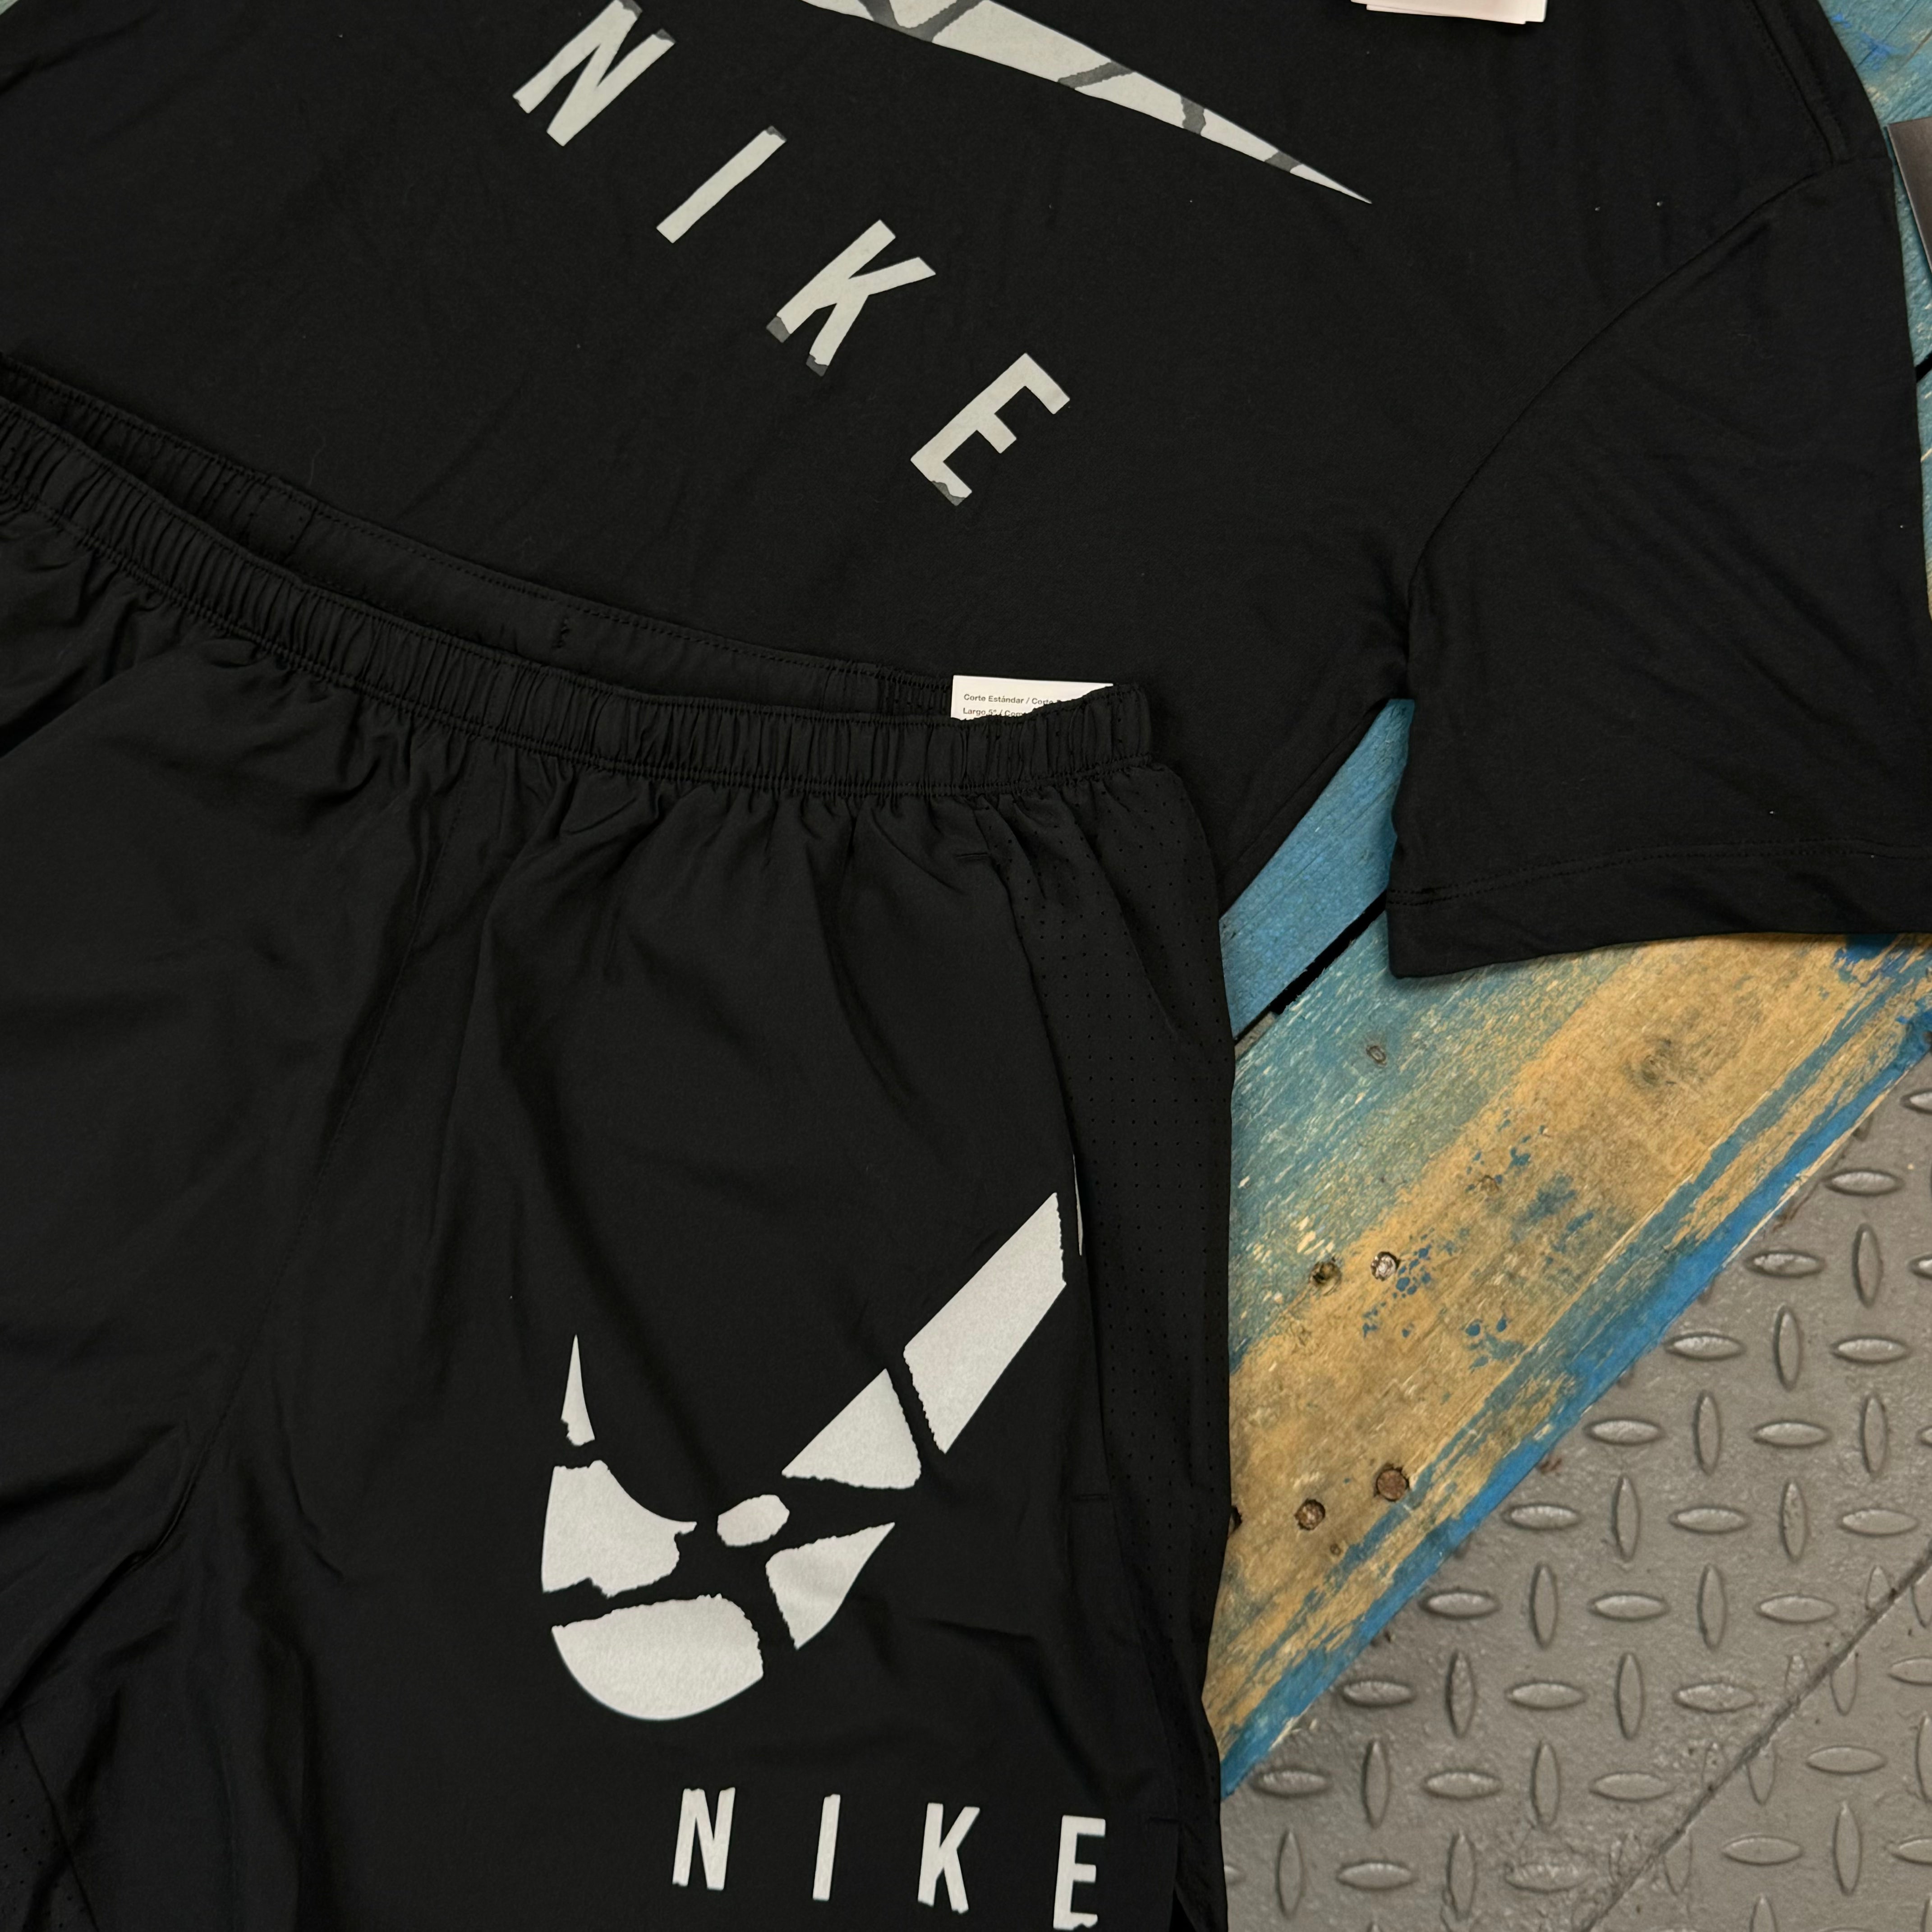 Nike Run Division T-Shirt & Short Set - Black